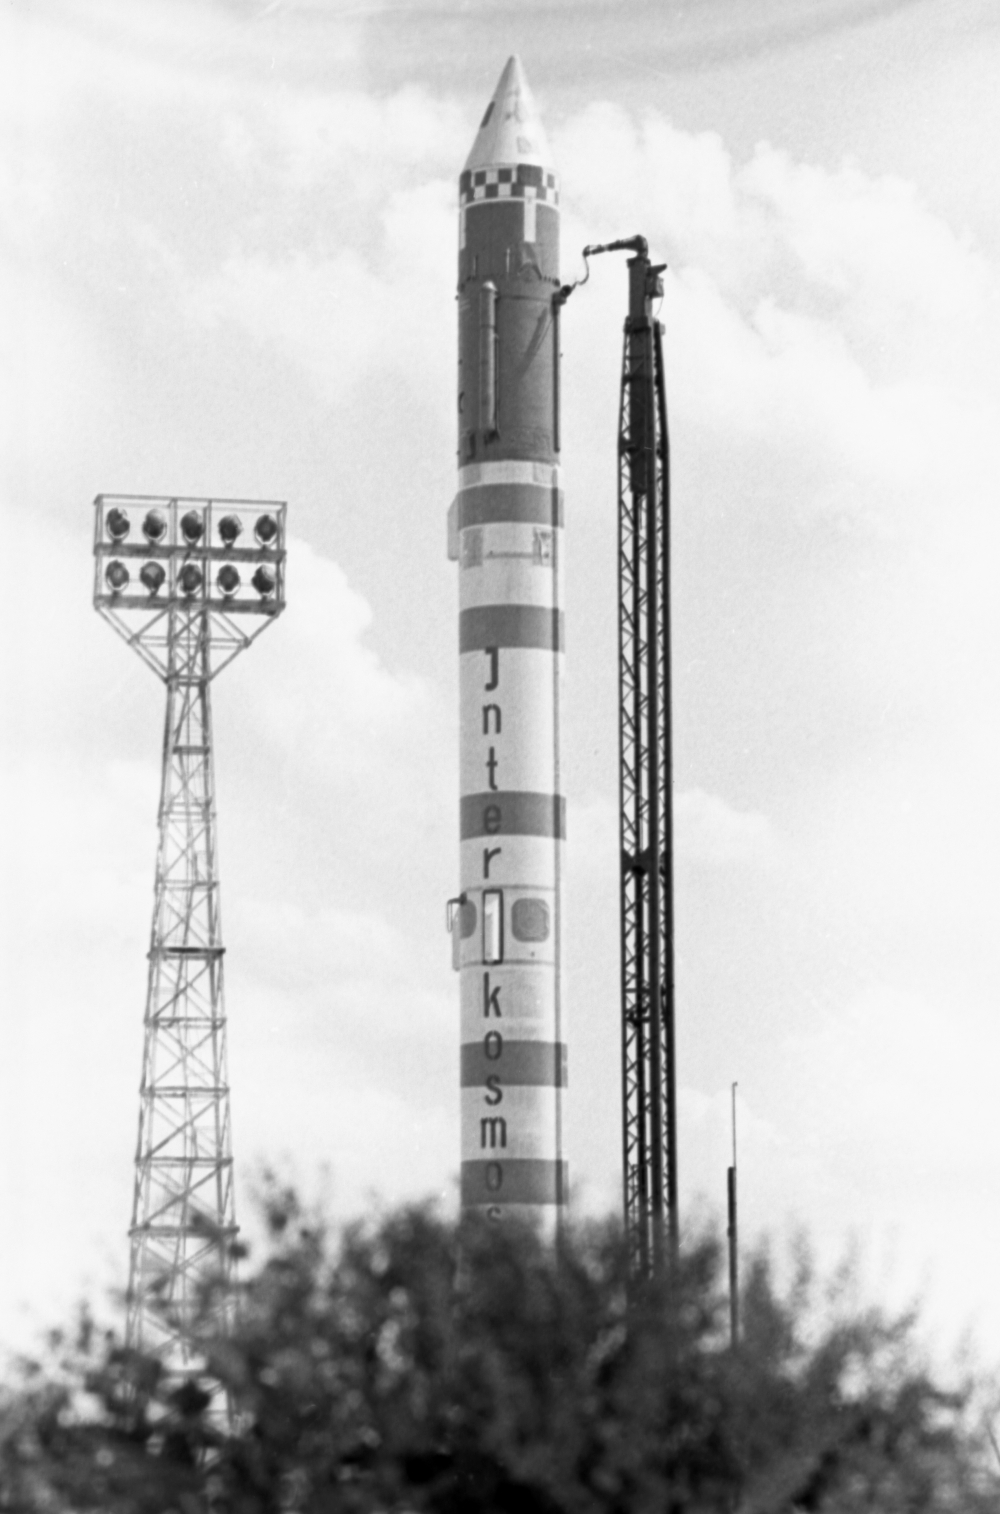 Ракета-носитель с искусственным спутником Земли «Интеркосмос — 11» на старте. Космодром «Капустин яр», 1974 г.